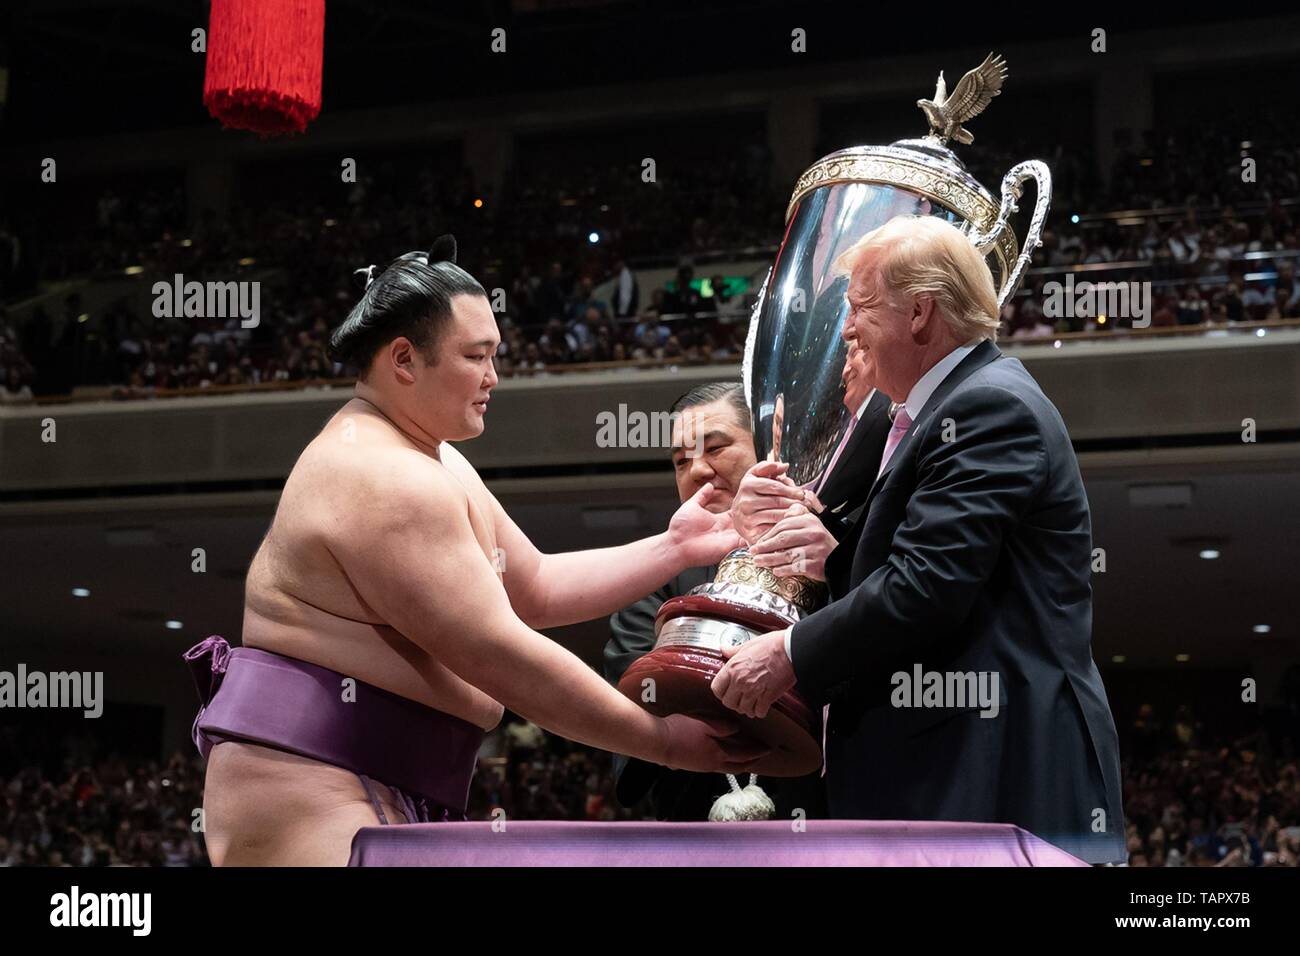 Le Président américain Donald Trump présente la Coupe des Présidents au Grand champion de sumo, Asanoyama gauche, au stade Ryogoku Kokugikan, le 26 mai 2019 à Tokyo, Japon. Banque D'Images